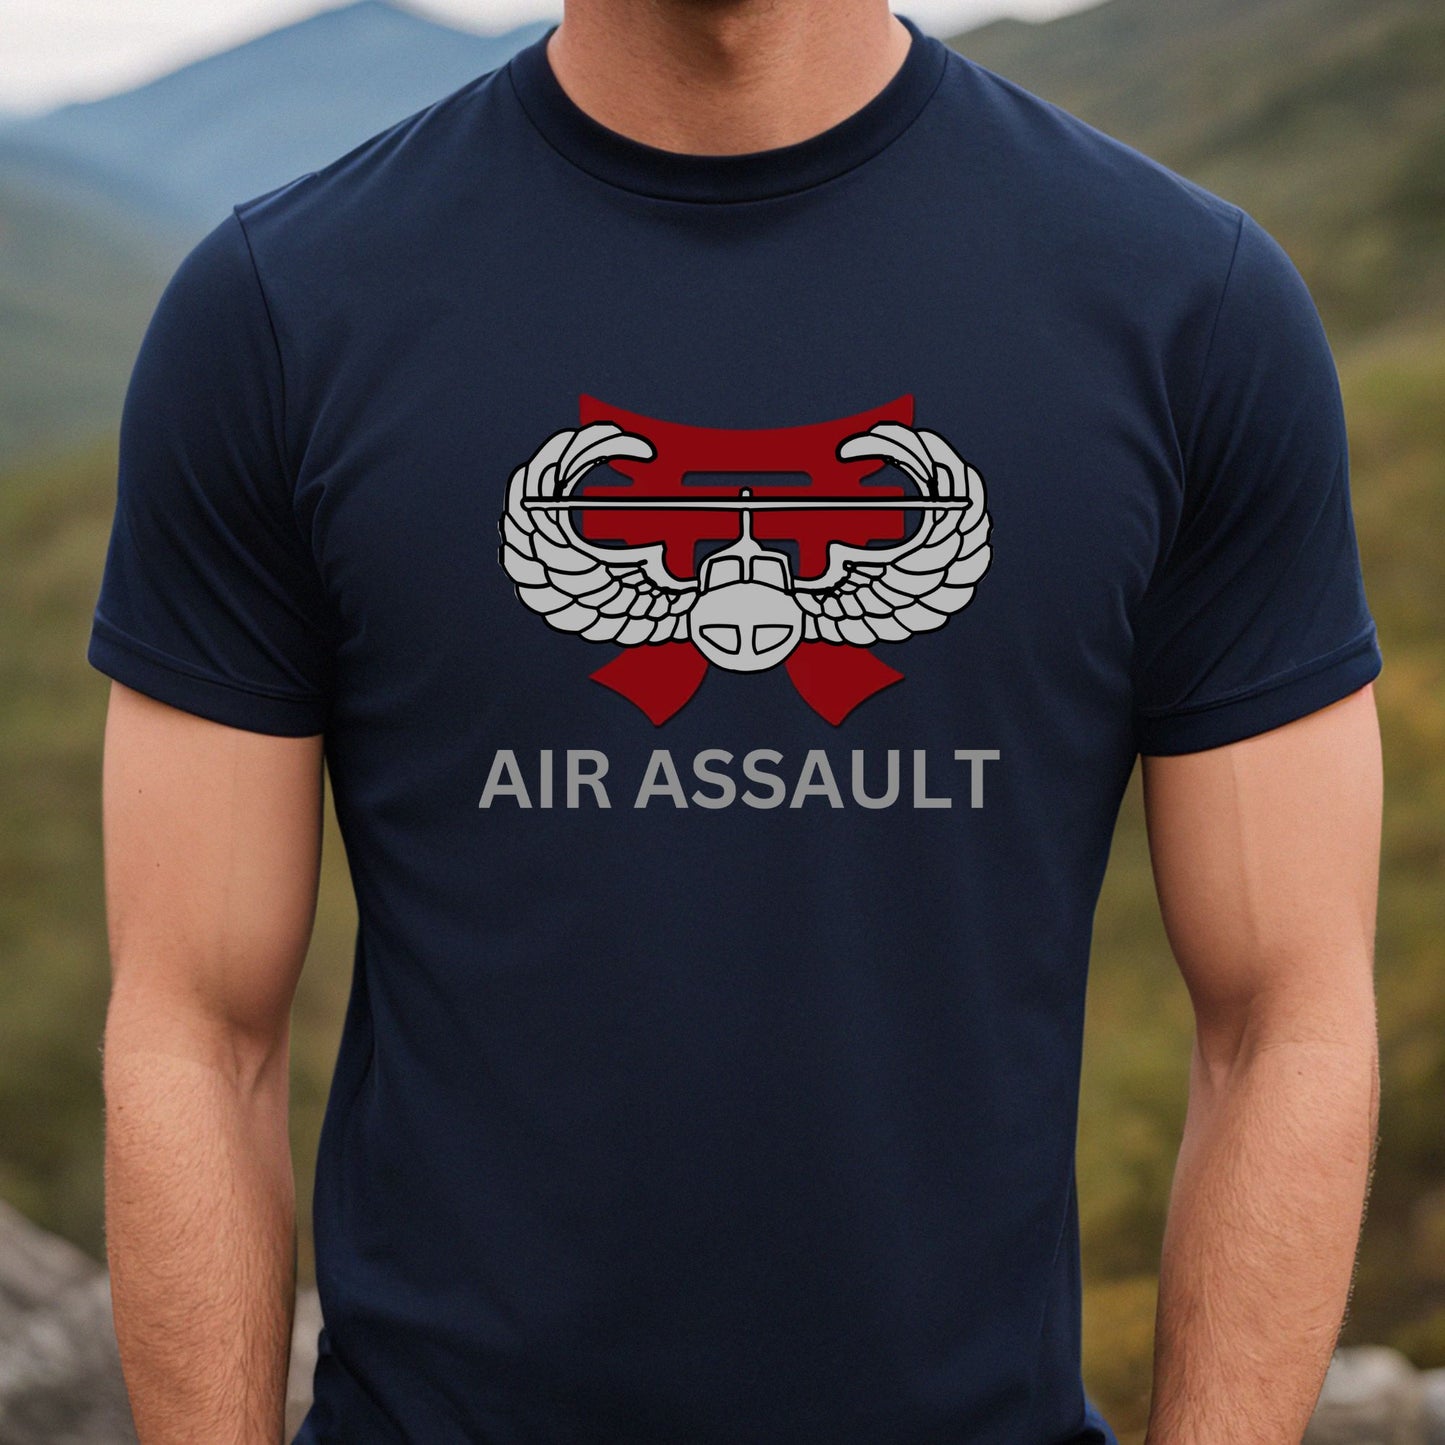 Rakkgear Air Assault Short Sleeve Tee in navy blue